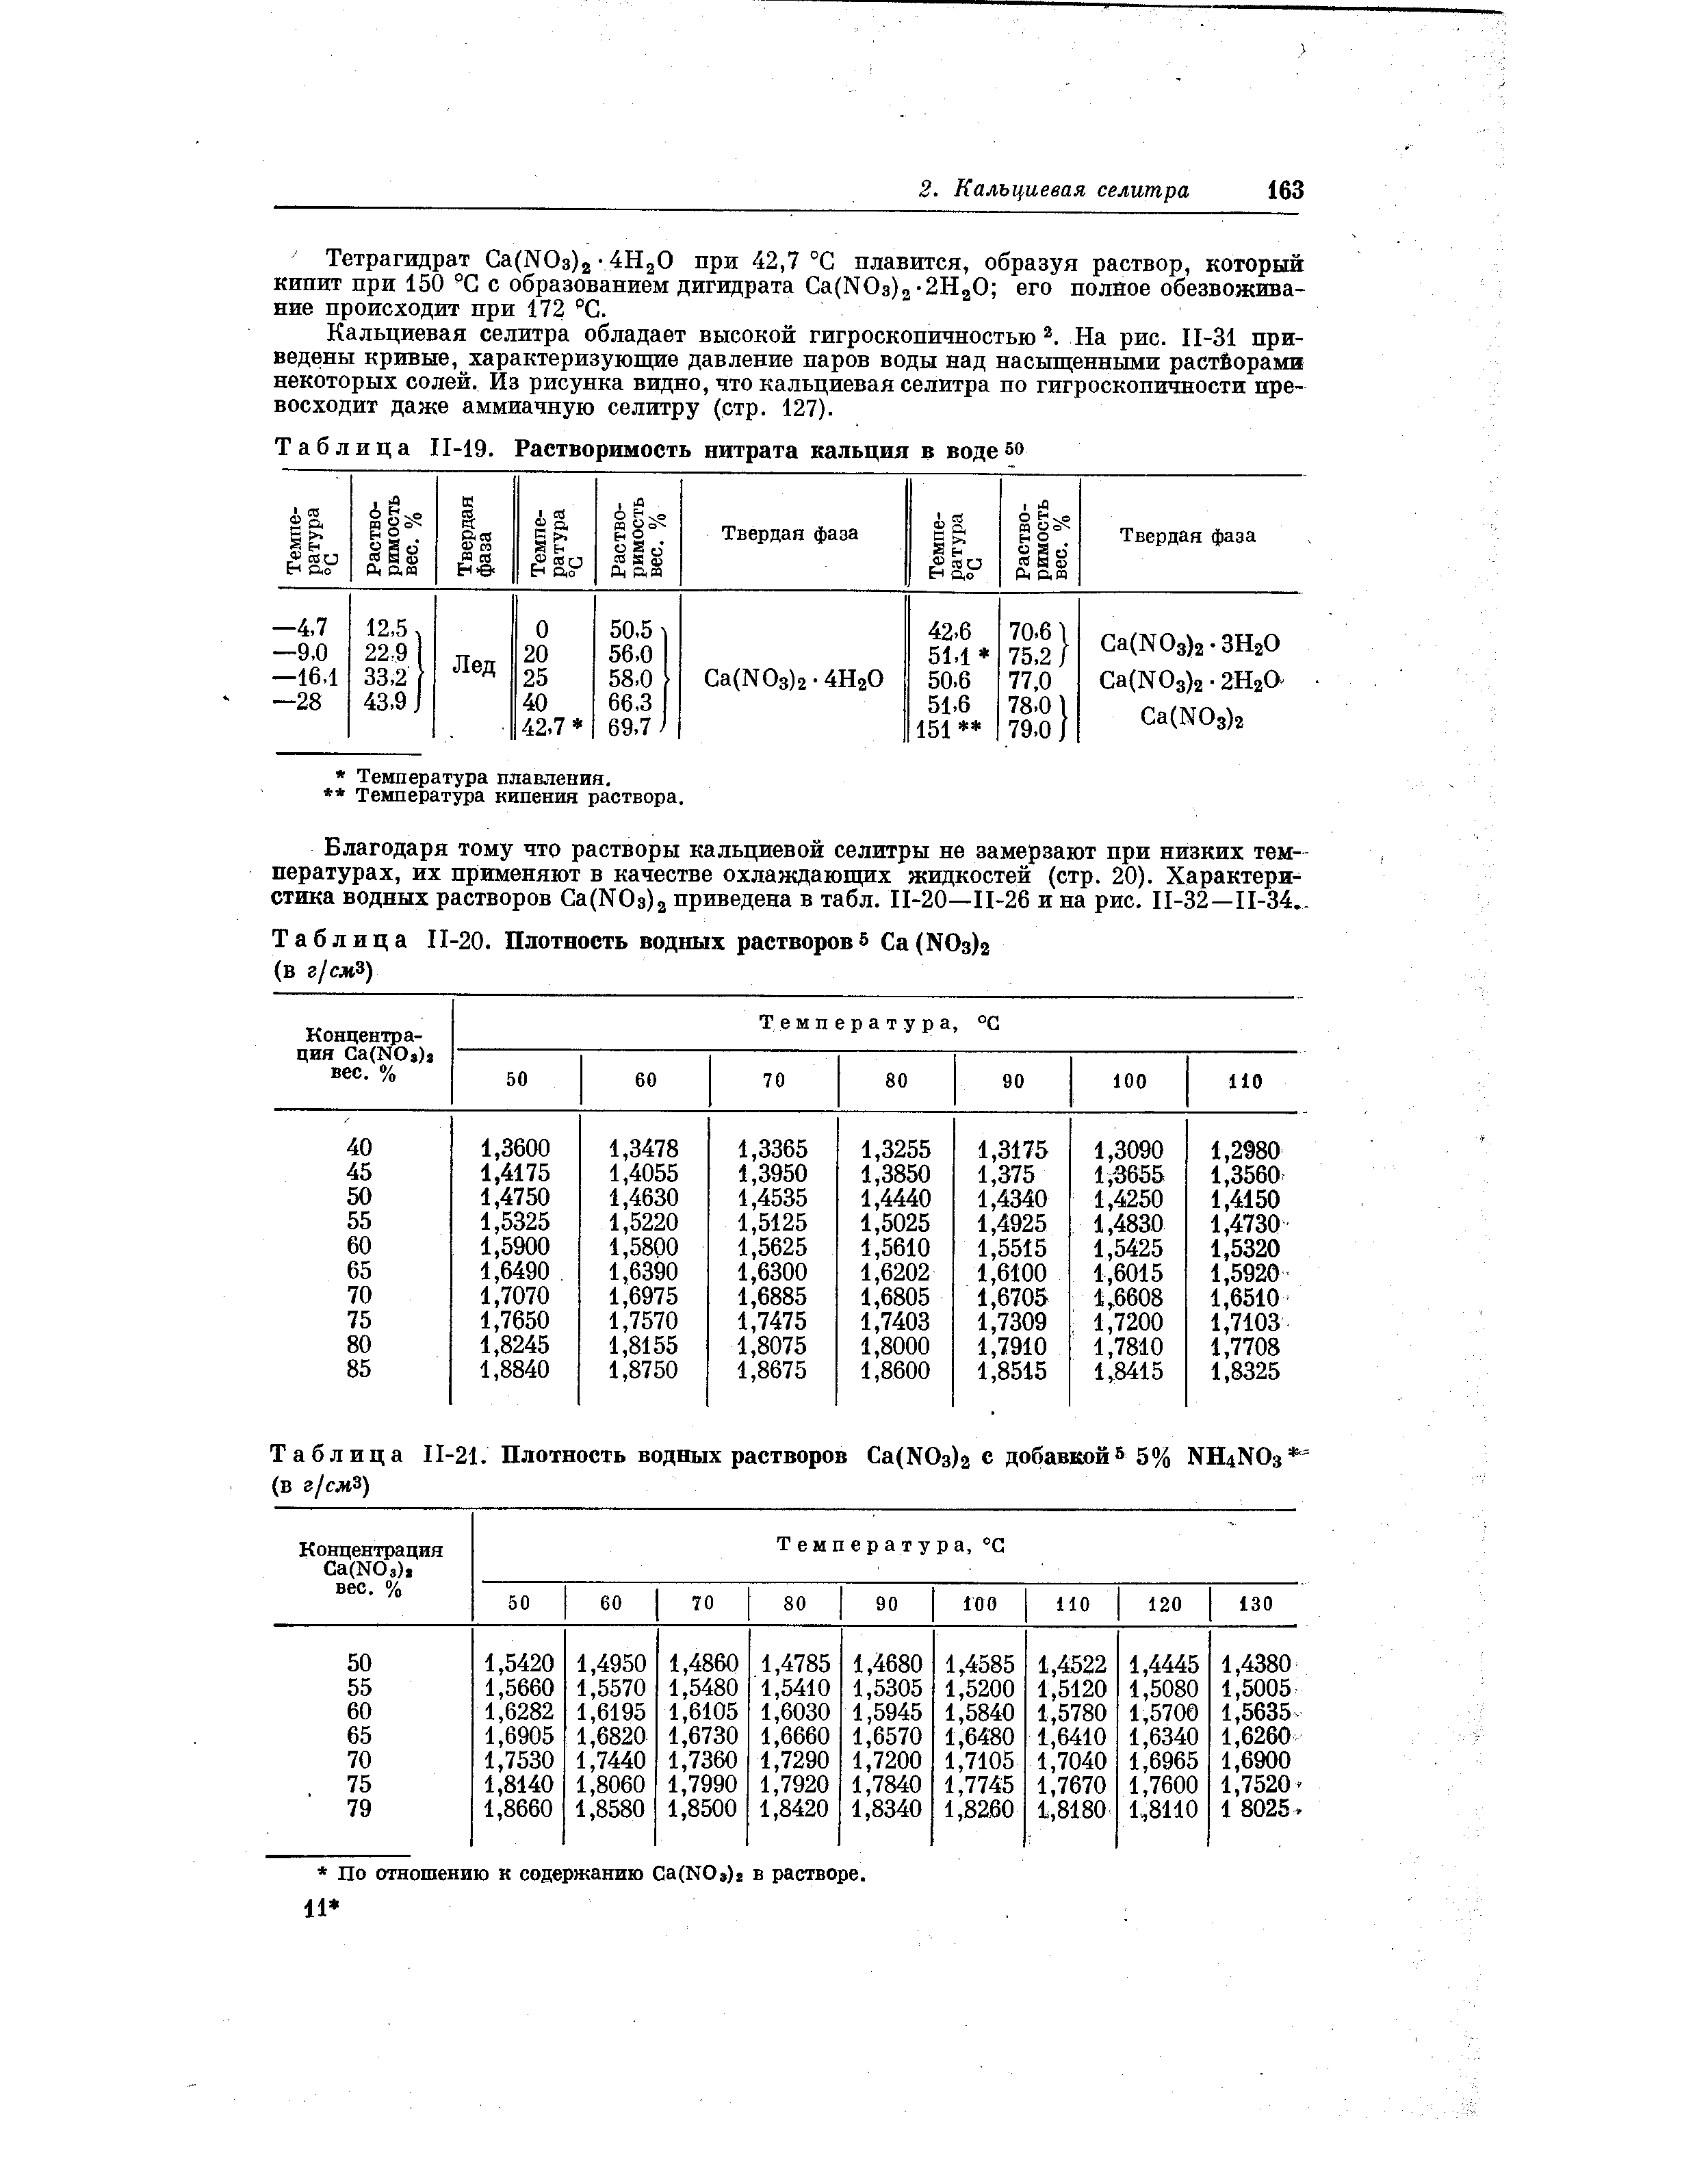 Таблица П-20. Плотность водных растворов 5 a(NOз)г (в г/сжЗ)
